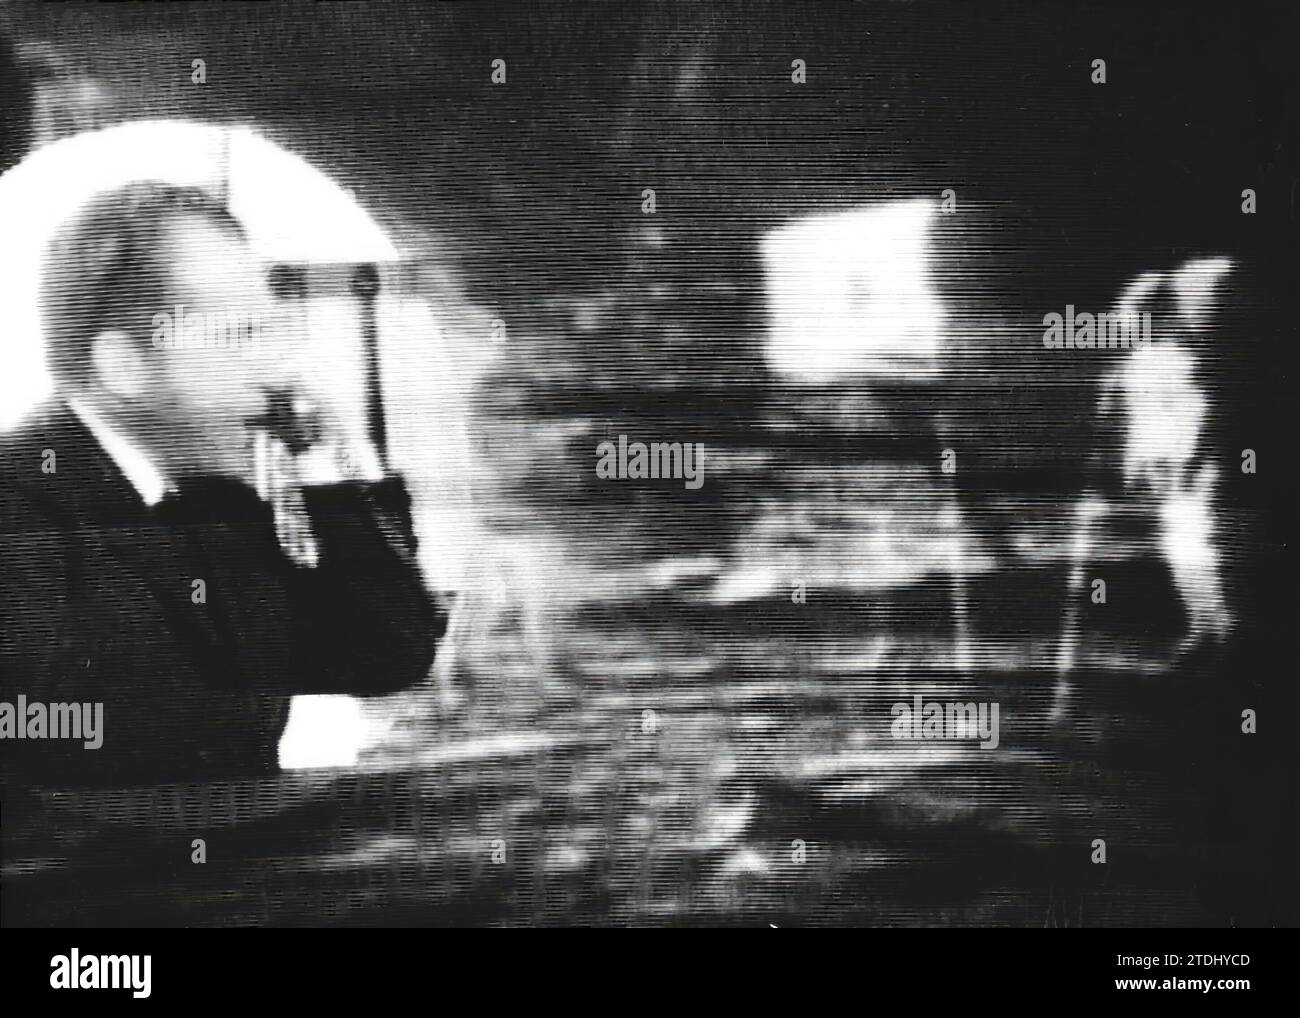 07/20/1969. Richard Nixon spricht am Telefon mit Apollo XI Astronauten, nachdem Armstrong und Aldrin auf dem Mond landen. Quelle: Album/Archivo ABC Stockfoto